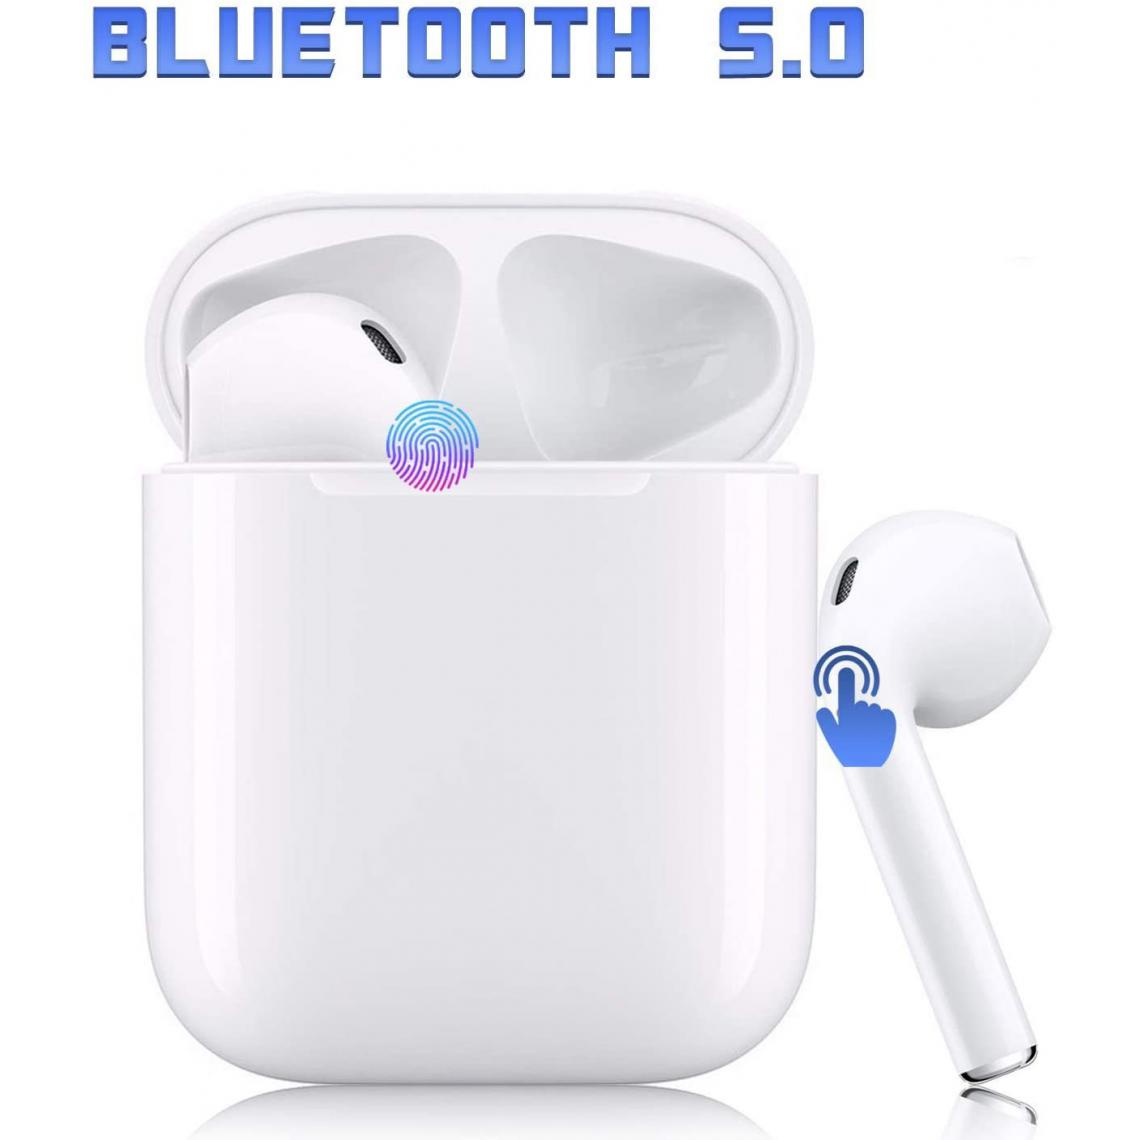 Chrono - i12 Casque Bluetooth 5.0,Casque sans Fil stéréo à Suppression du Bruit de 48 Heures avec Microphone intégré,contrôle Tactile,couplage Automatique,pour Tous Les smartphones Apple/Airpods/iPhone - Blanc - Ecouteurs intra-auriculaires